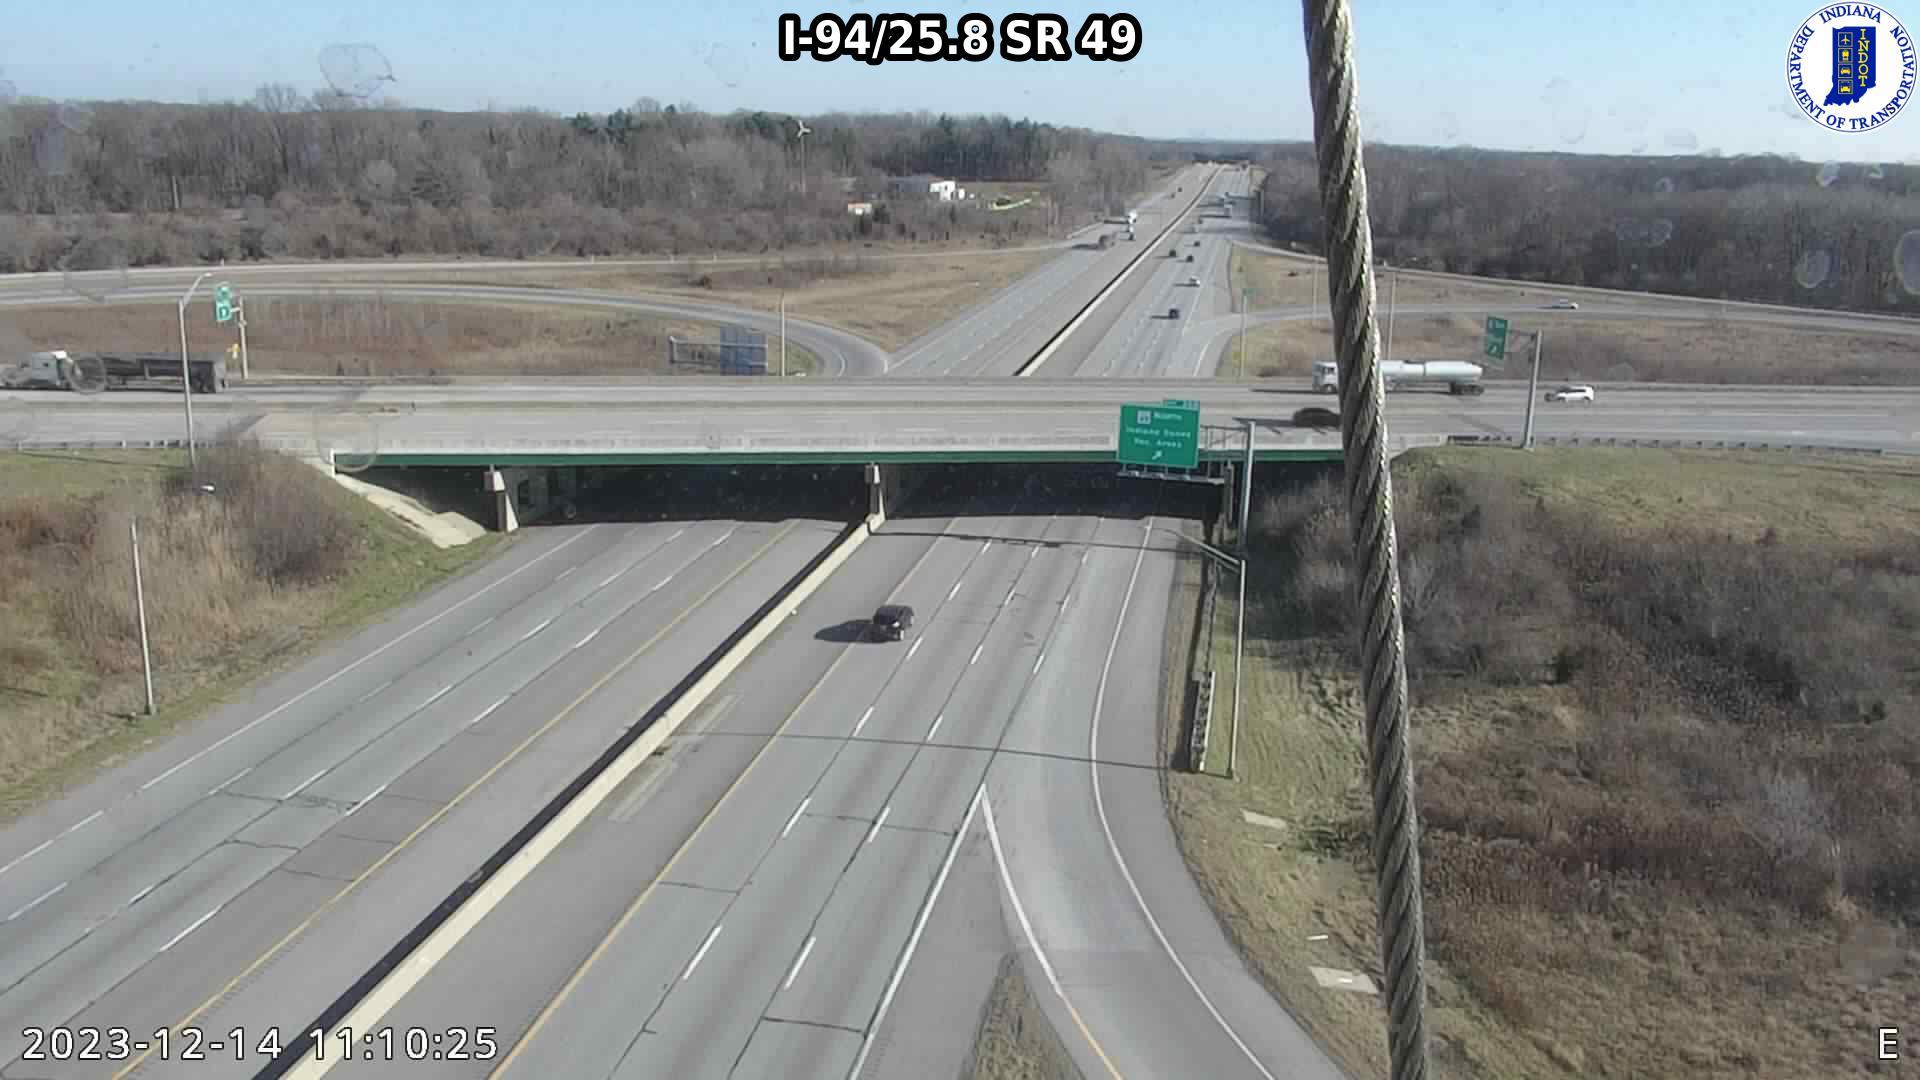 Traffic Cam Chesterton: I-94: I-94/25.8 SR 49 : I-94/25.8 SR 49